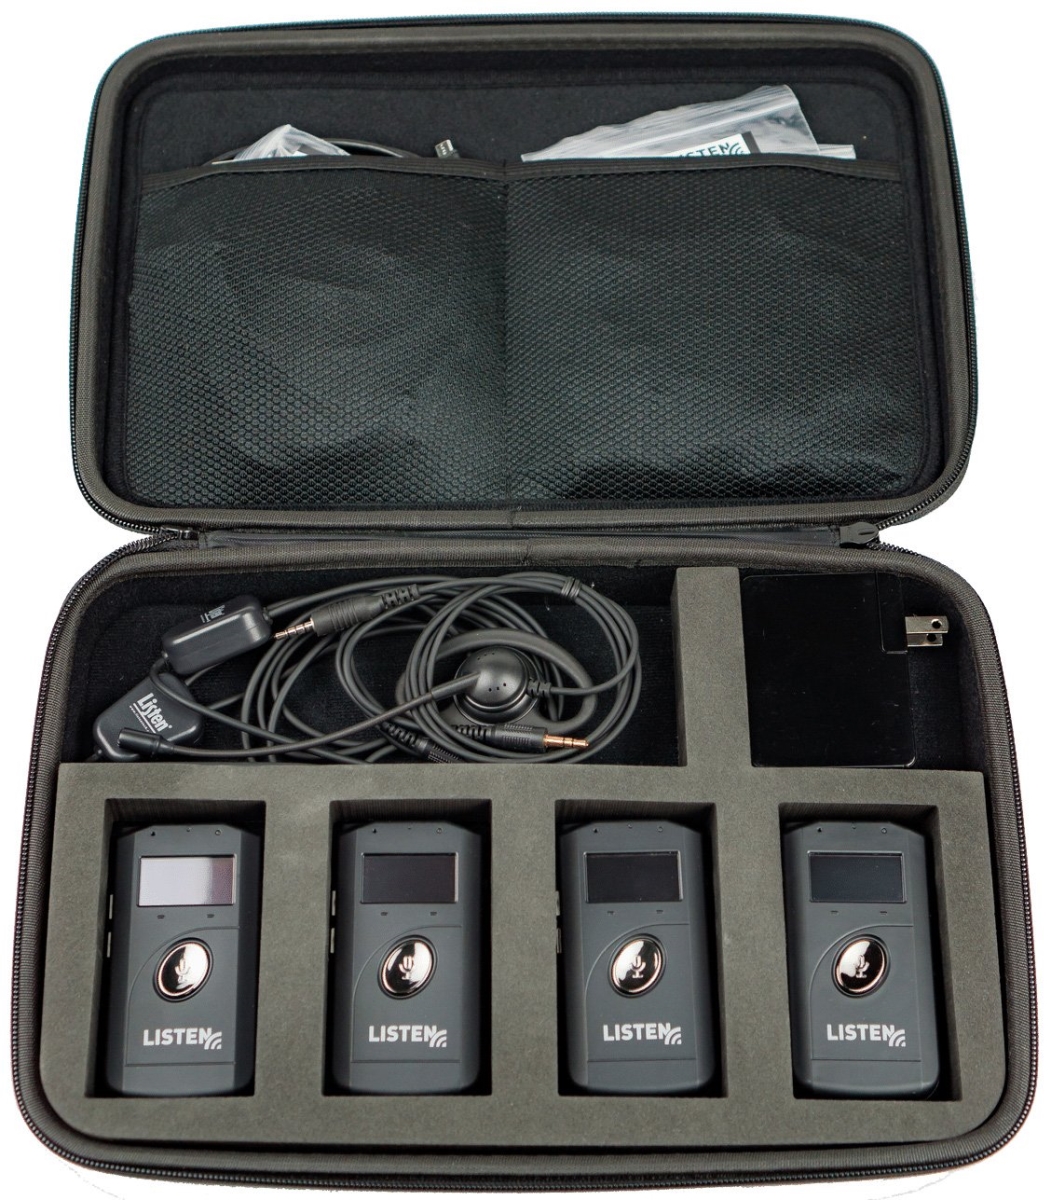 Lstn-lks-4-a1 Listentalk Portable Ada Kit